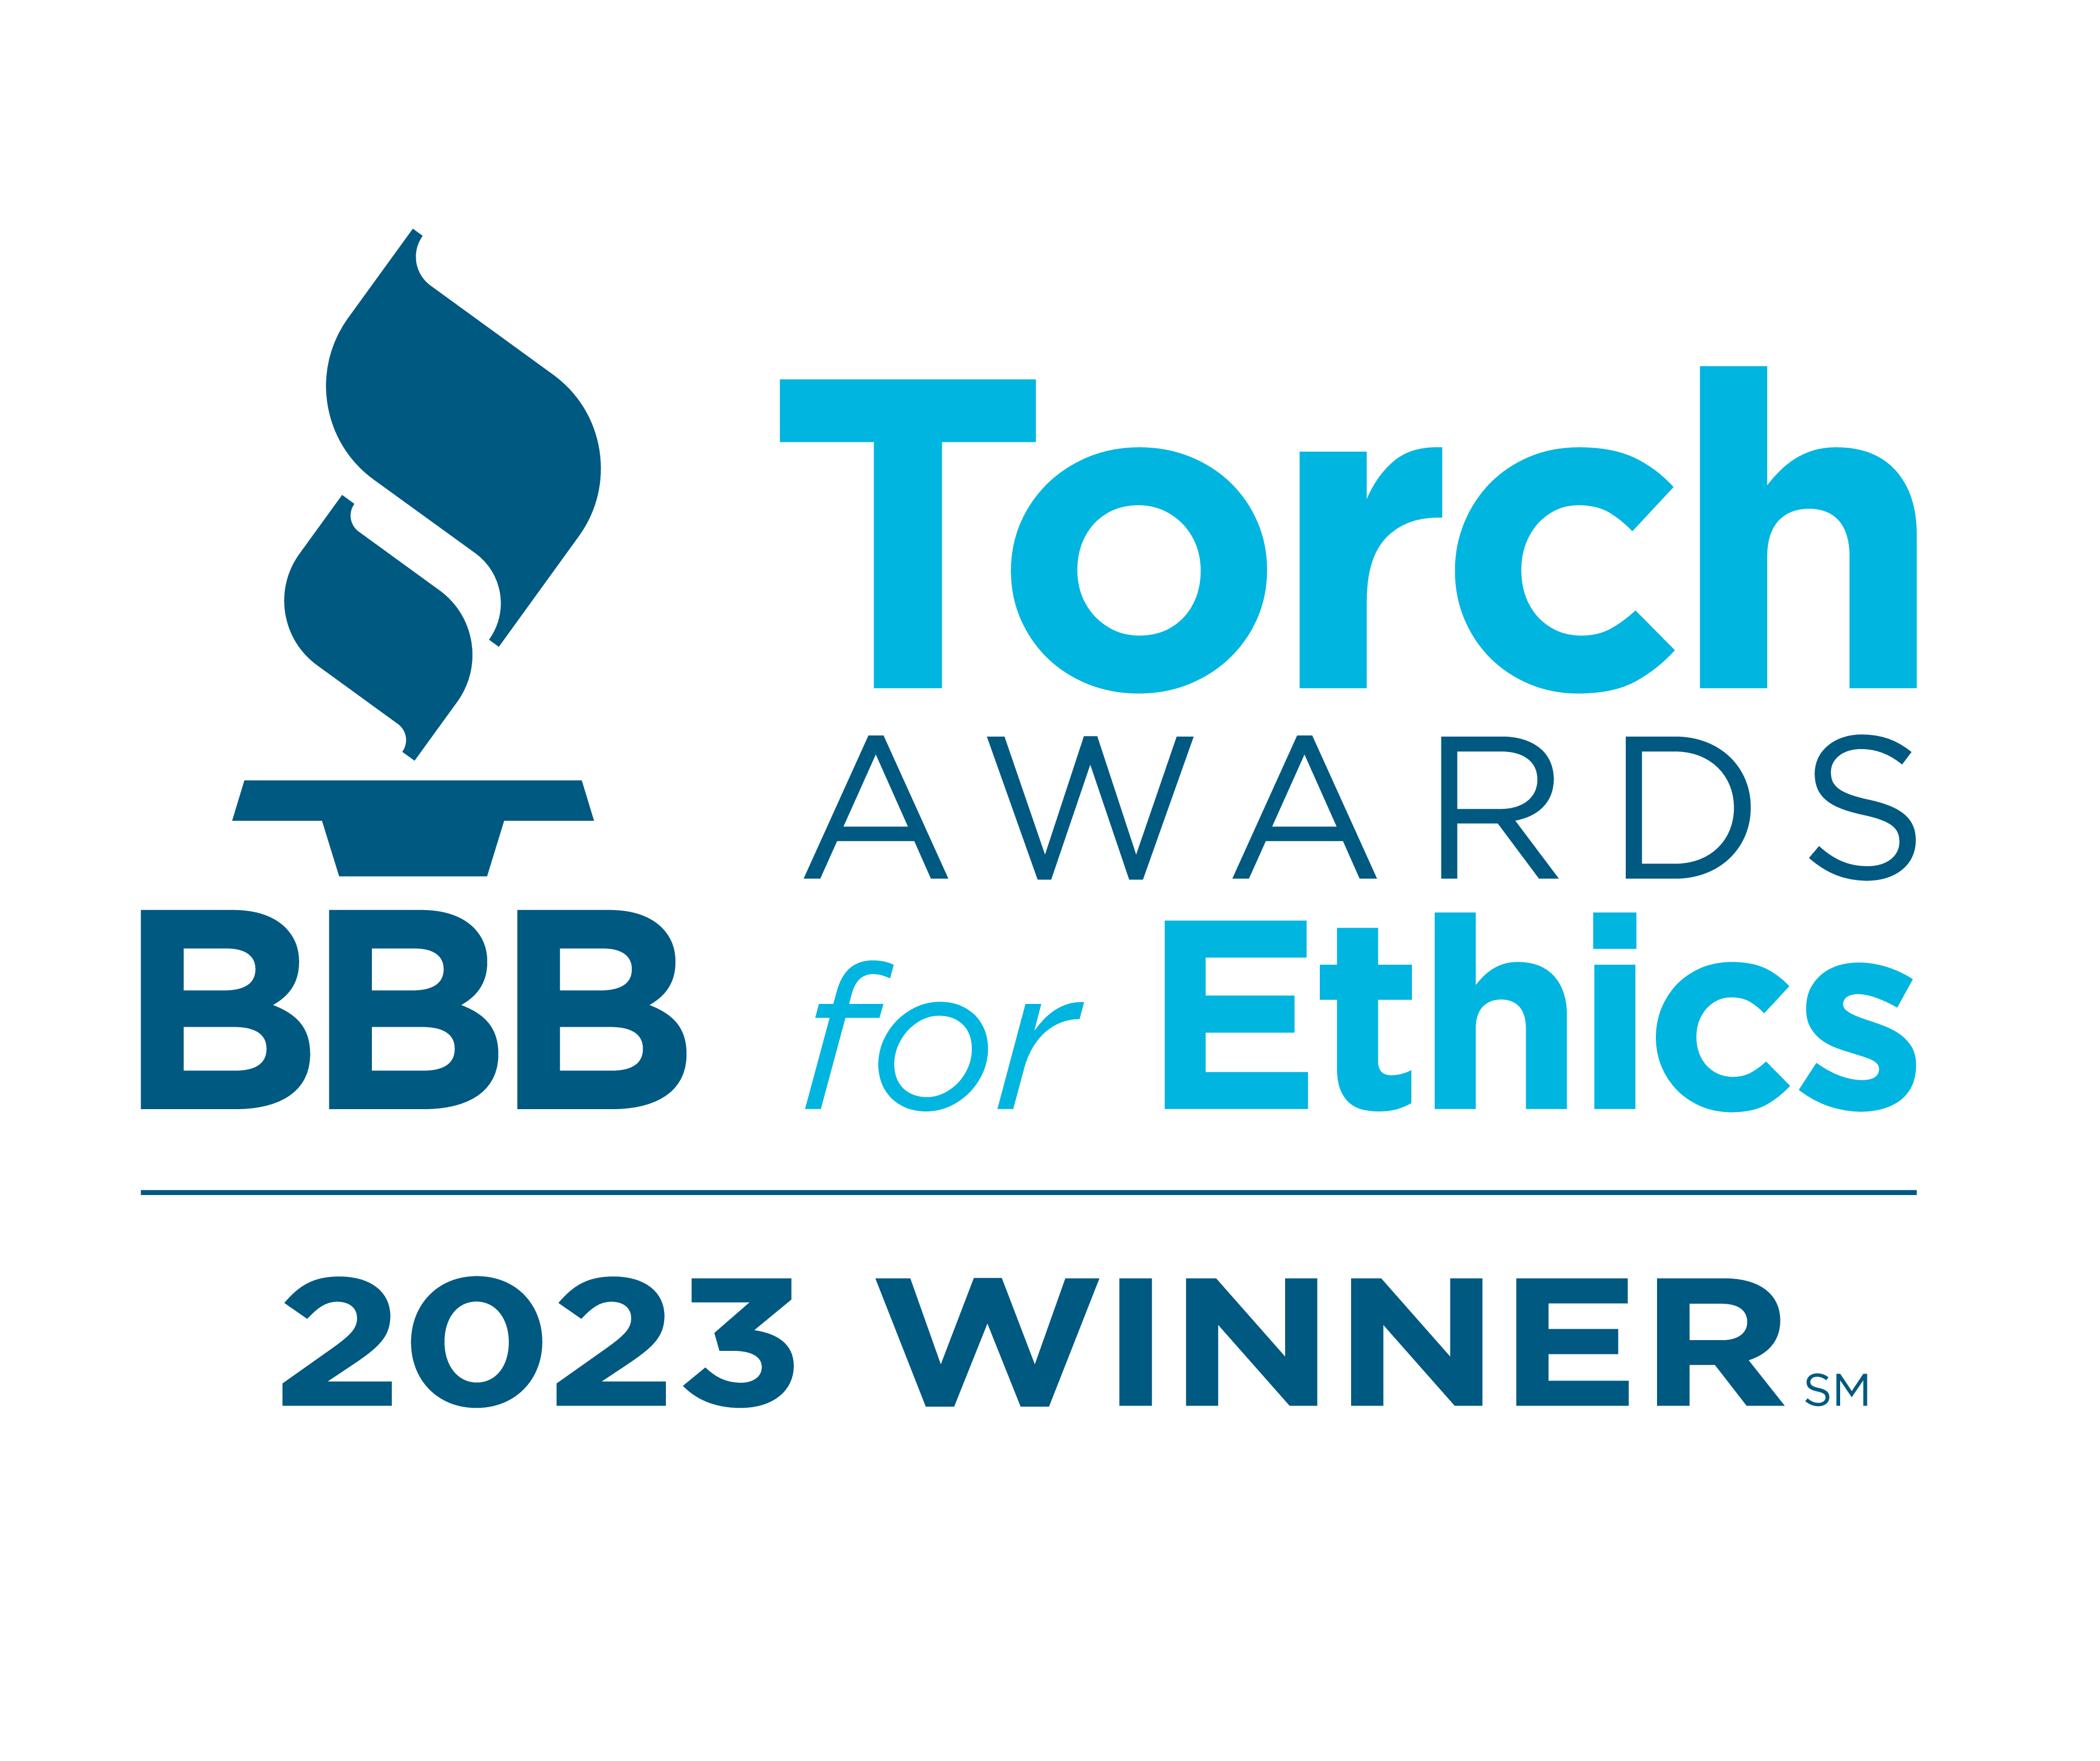 BBB Torch Awards for Ethics 2023 Winner